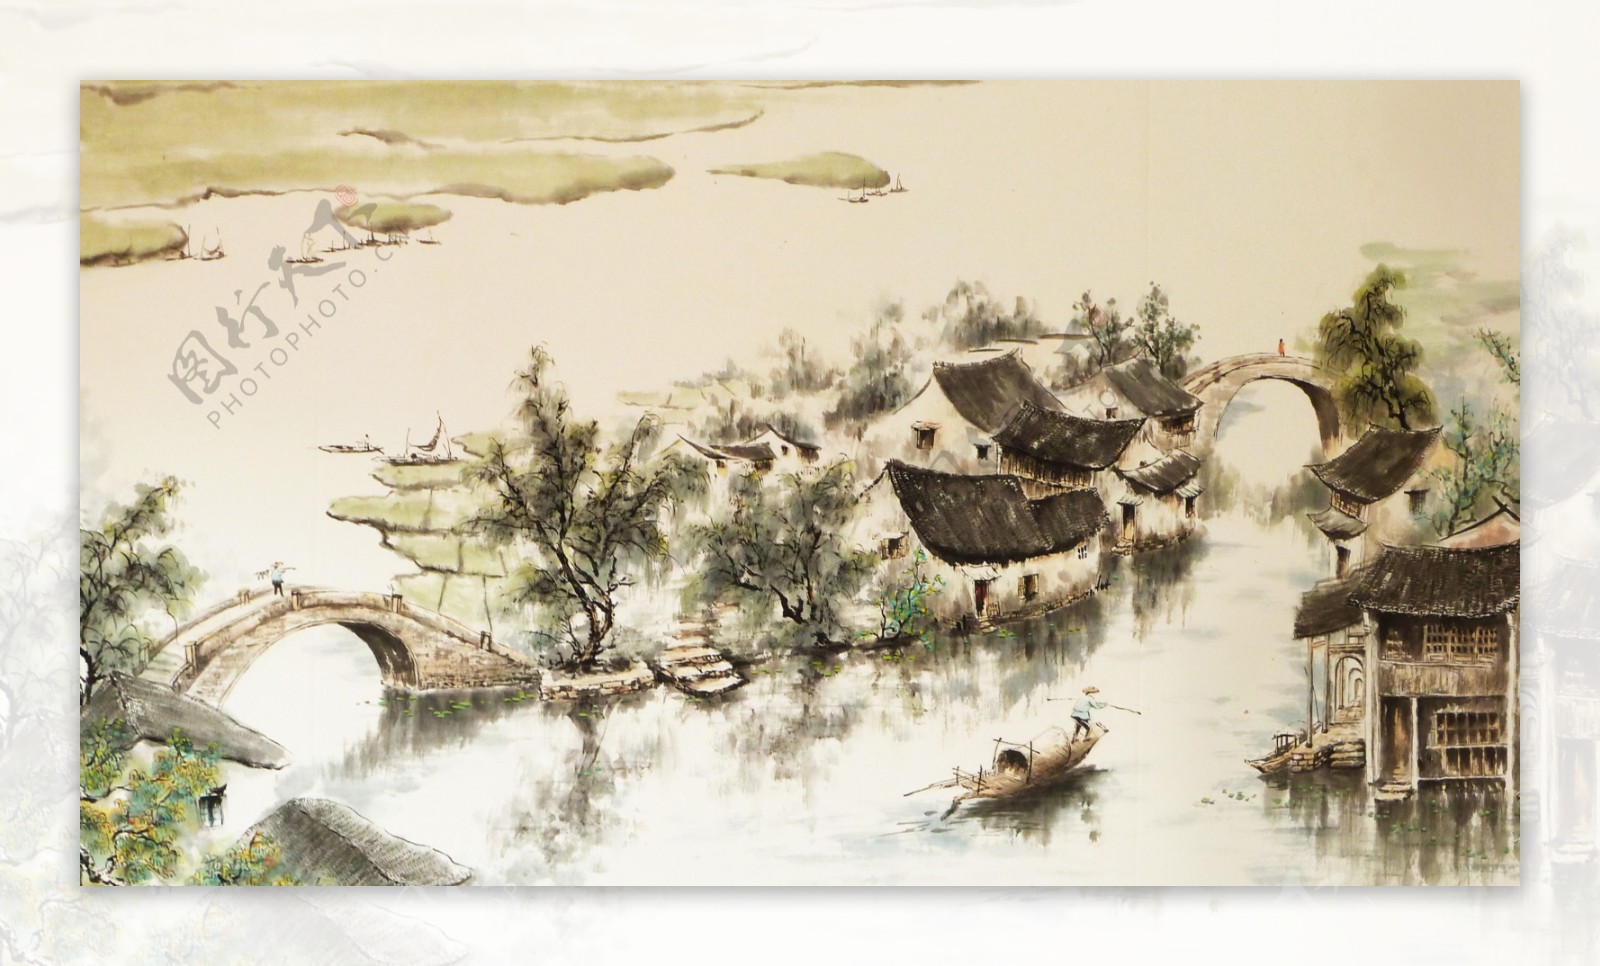 中国风水彩画图片